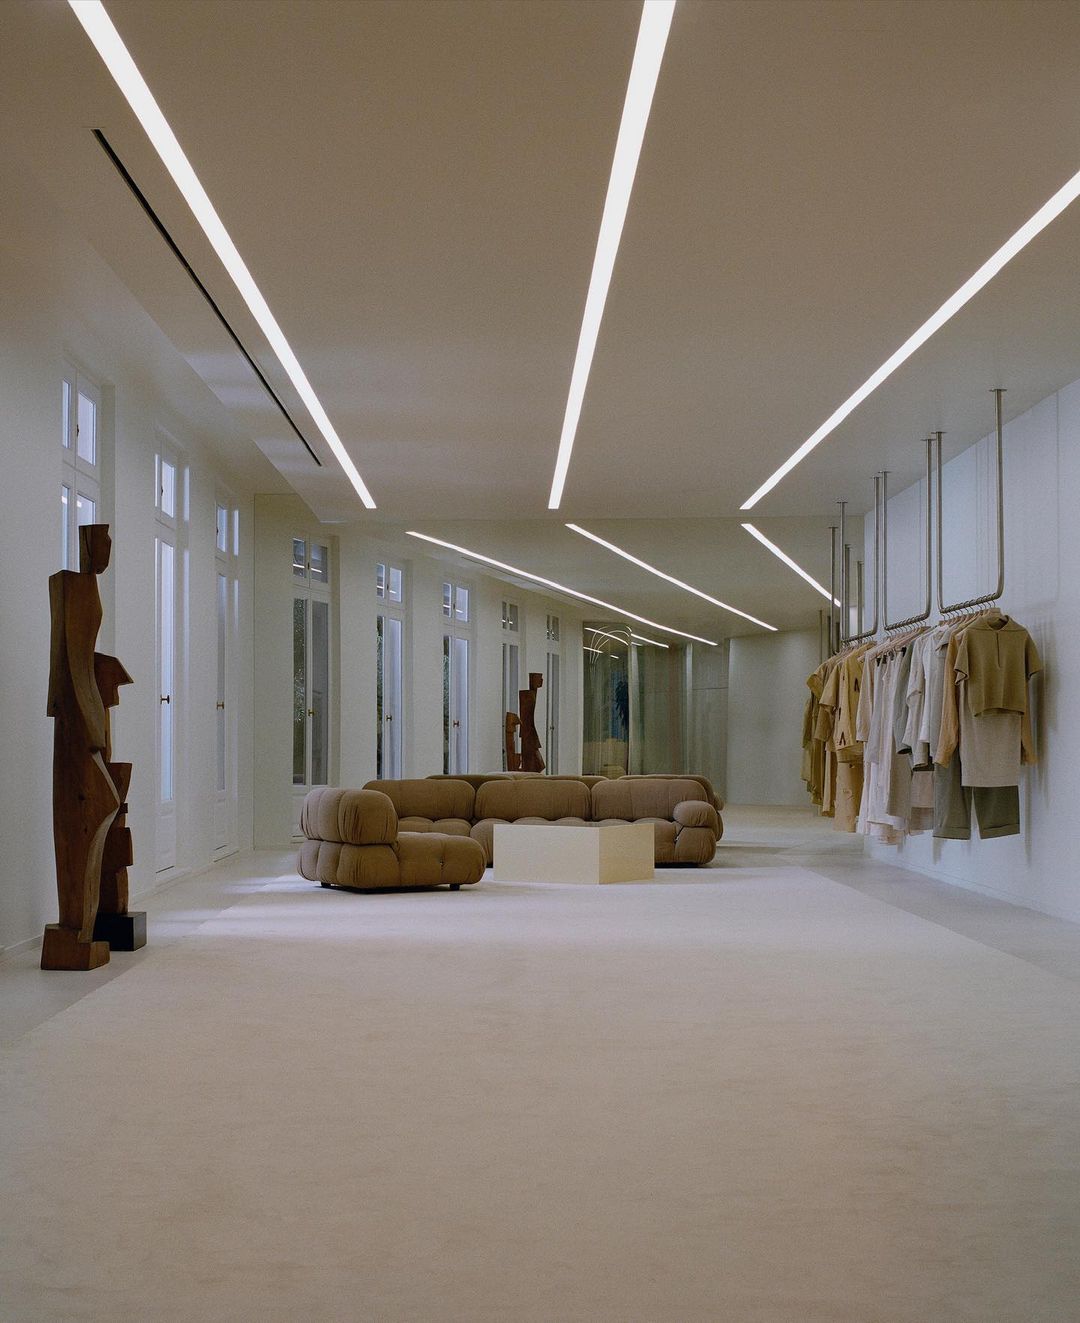 В гостях у Jacquemus: как выглядит новый офис модного бренда в Париже